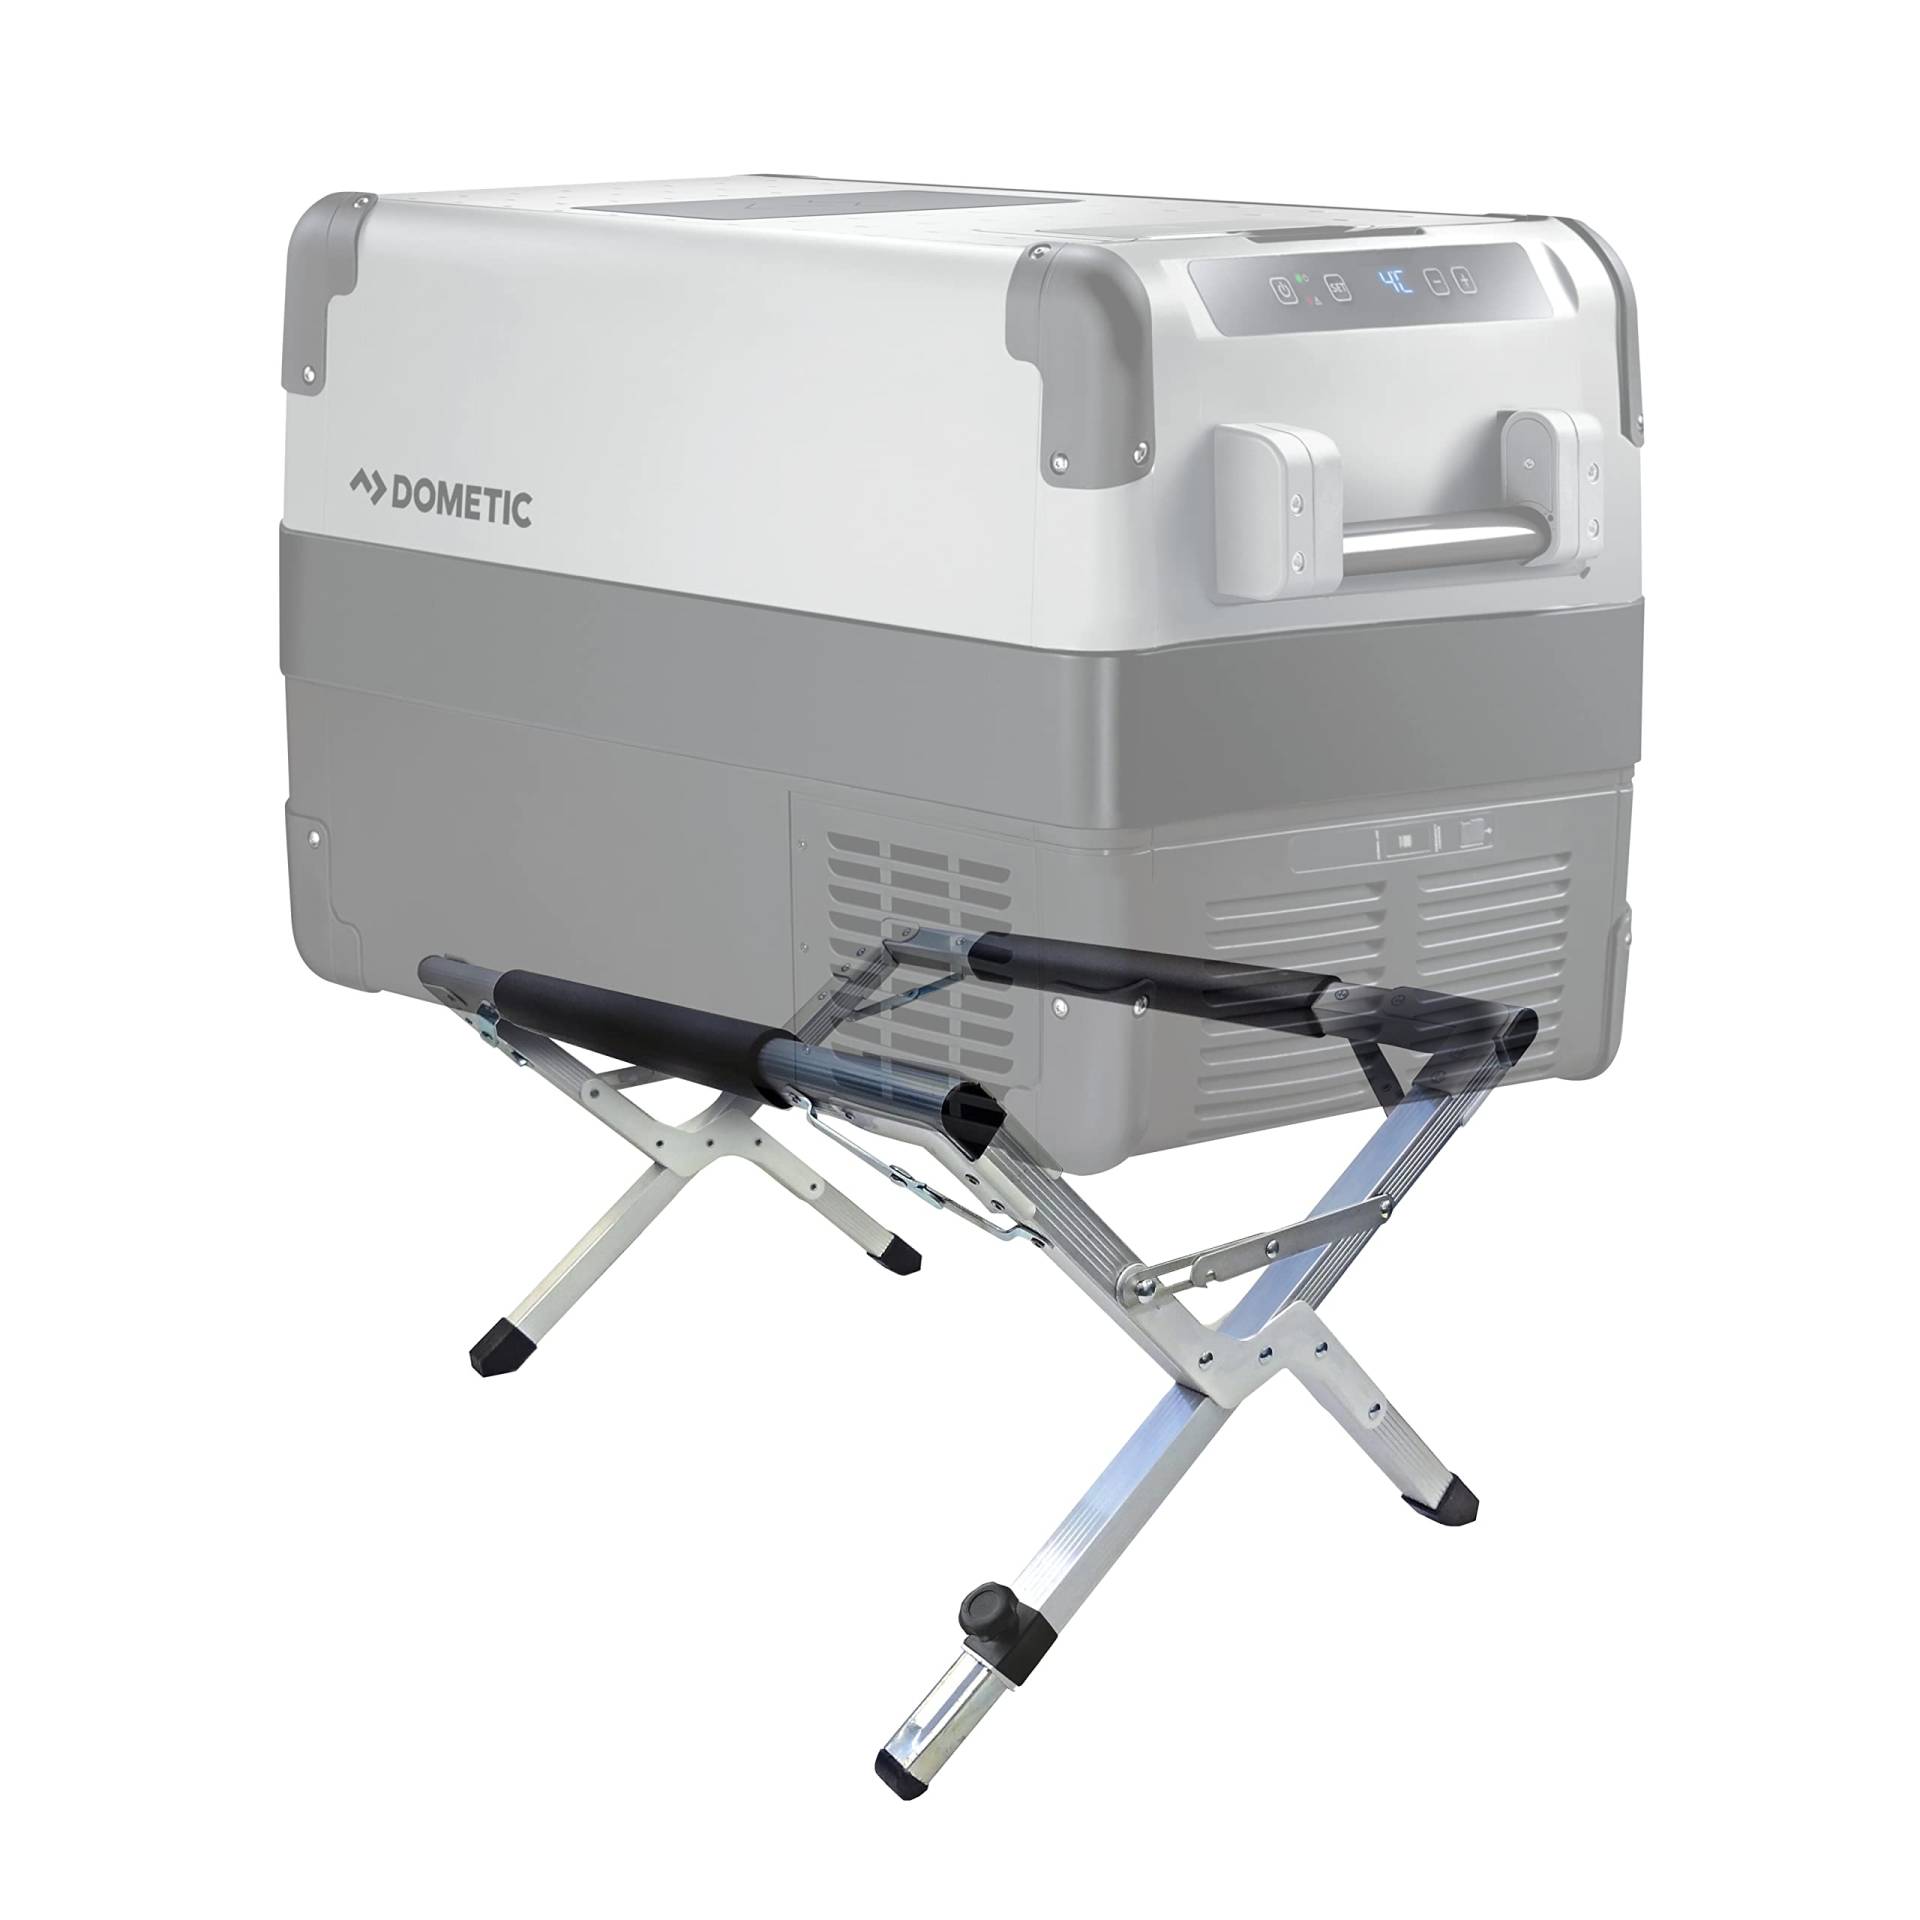 DOMETIC Kühlbox-Ständer - für Ihre Outdoor Camping-Küche: ✓sicher ✓hygienisch ✓rückenschonend - stabiler Kühlschrank-Ständer bis 80 kg Tragfähigkeit, variable Höhen-Einstellung von DOMETIC